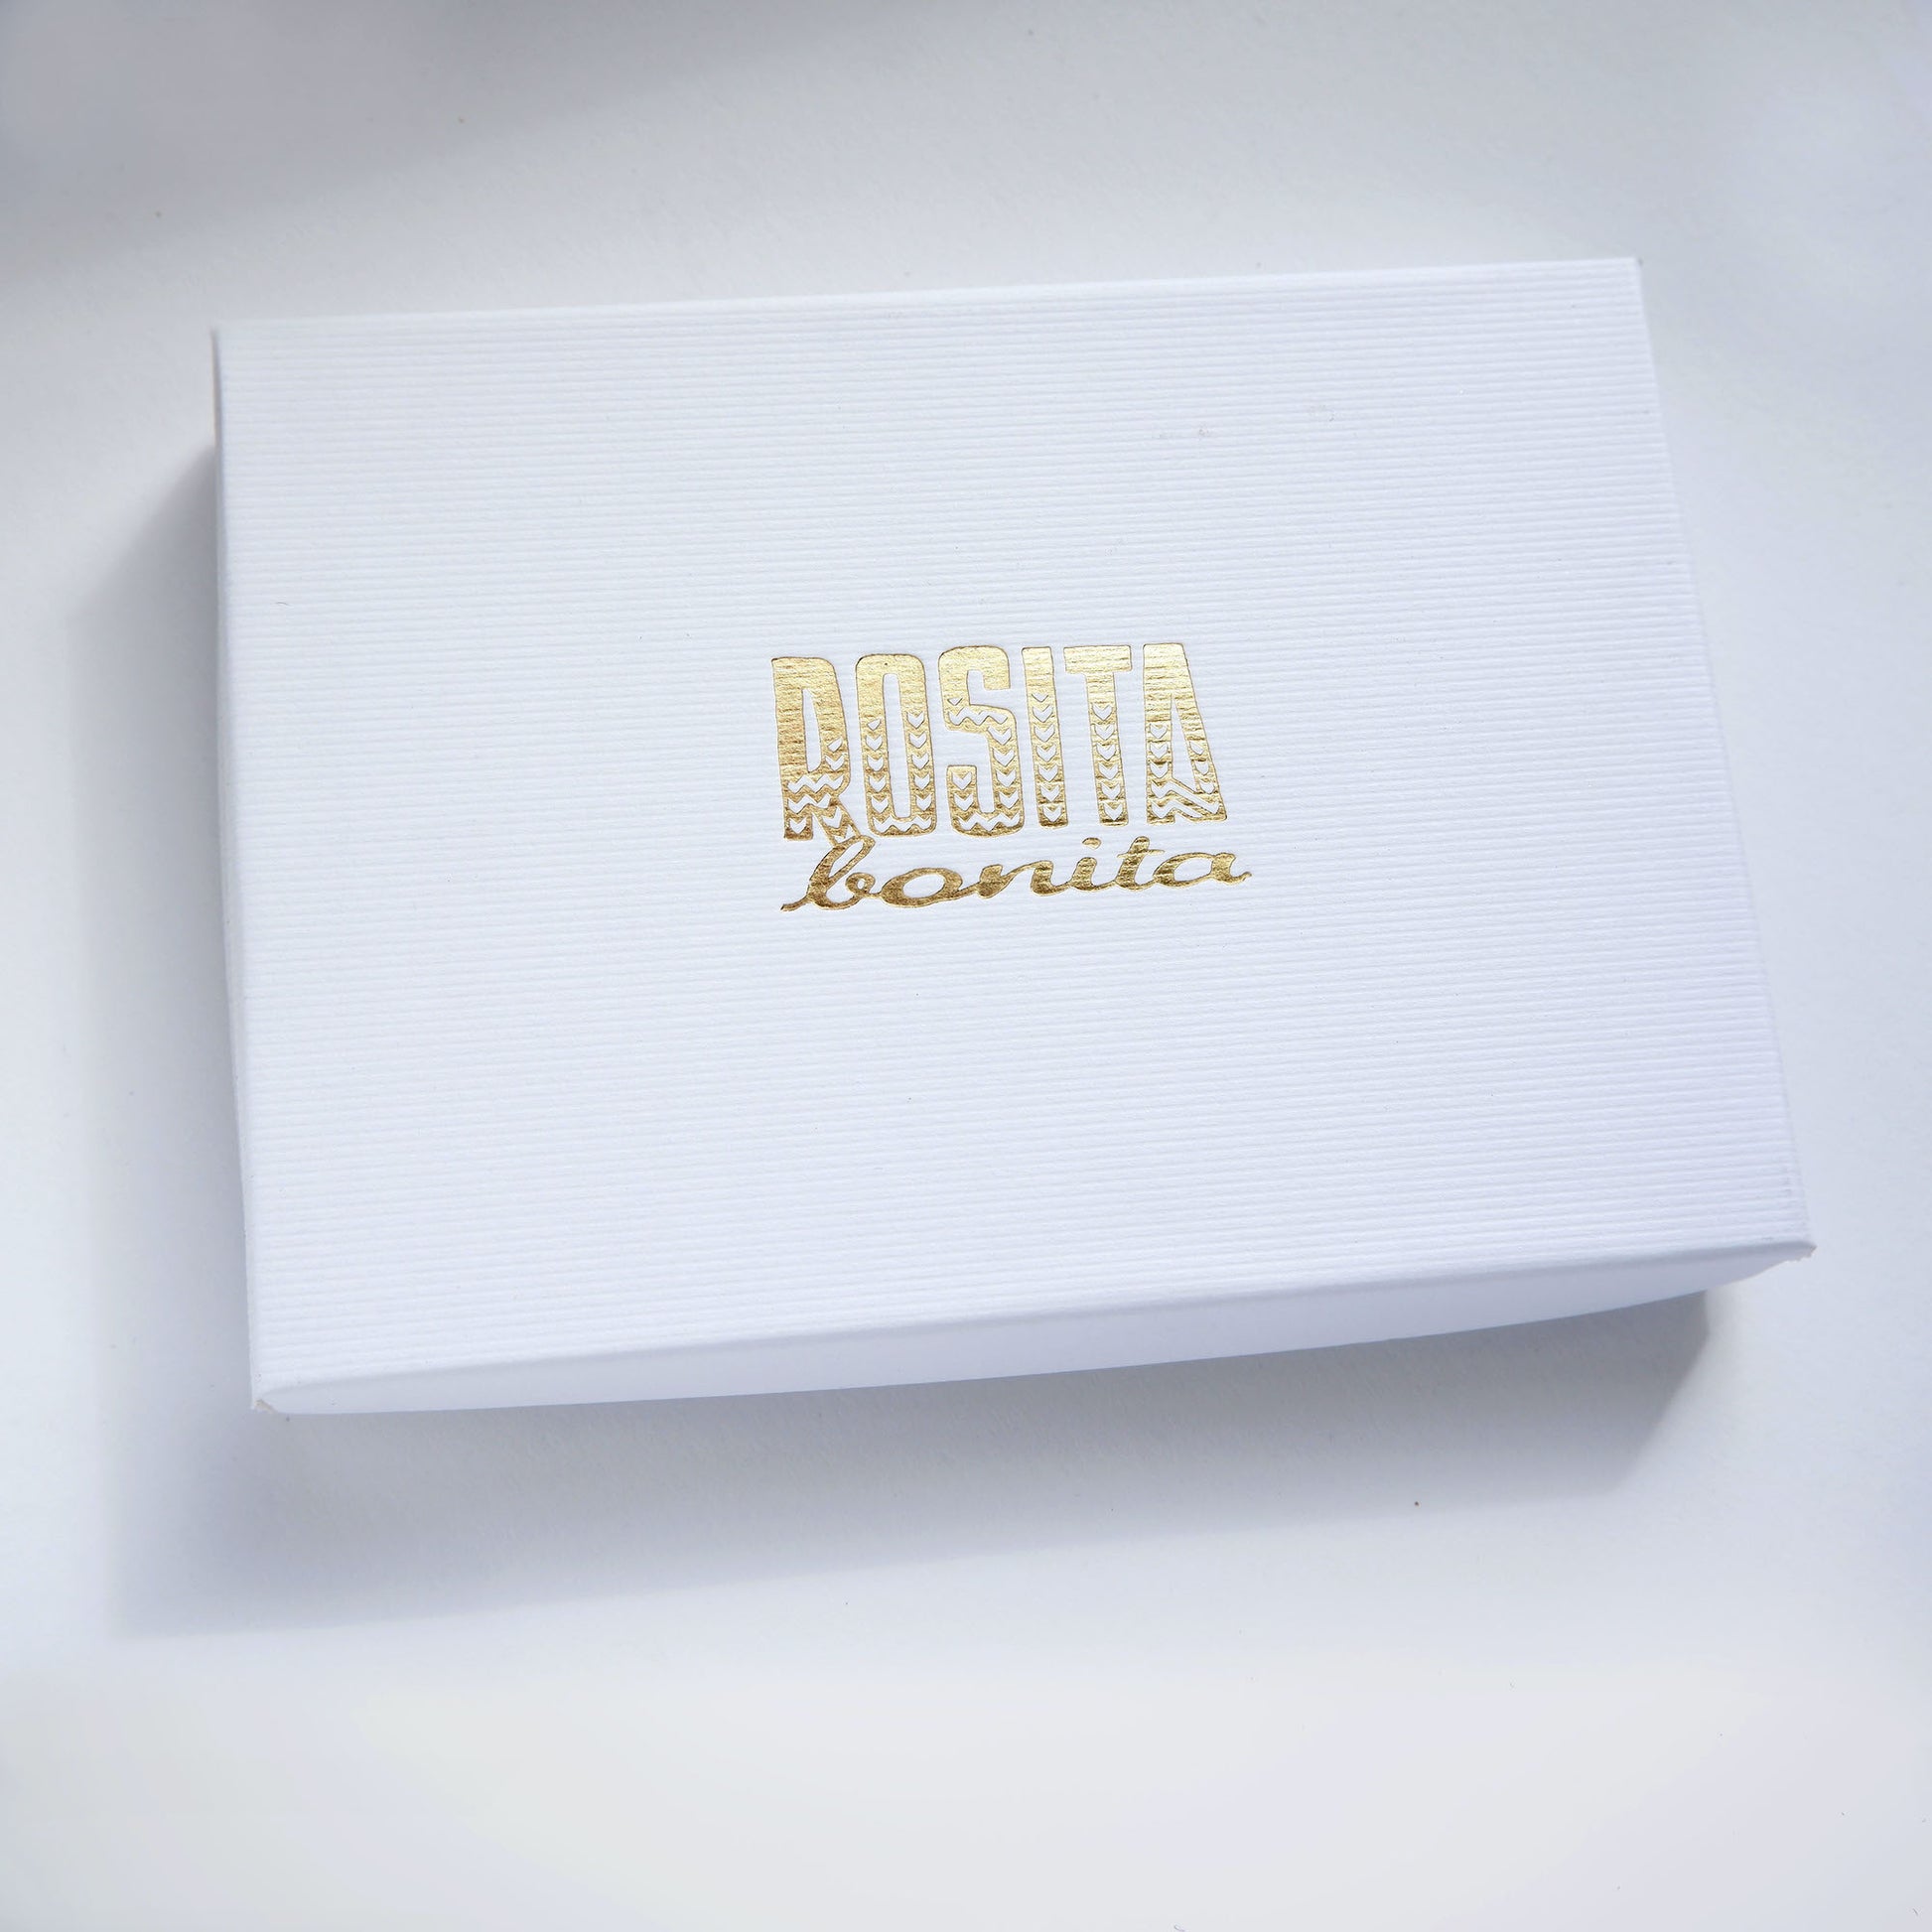 white ridged cardboard box with Rosita Bonita logo printed in gold